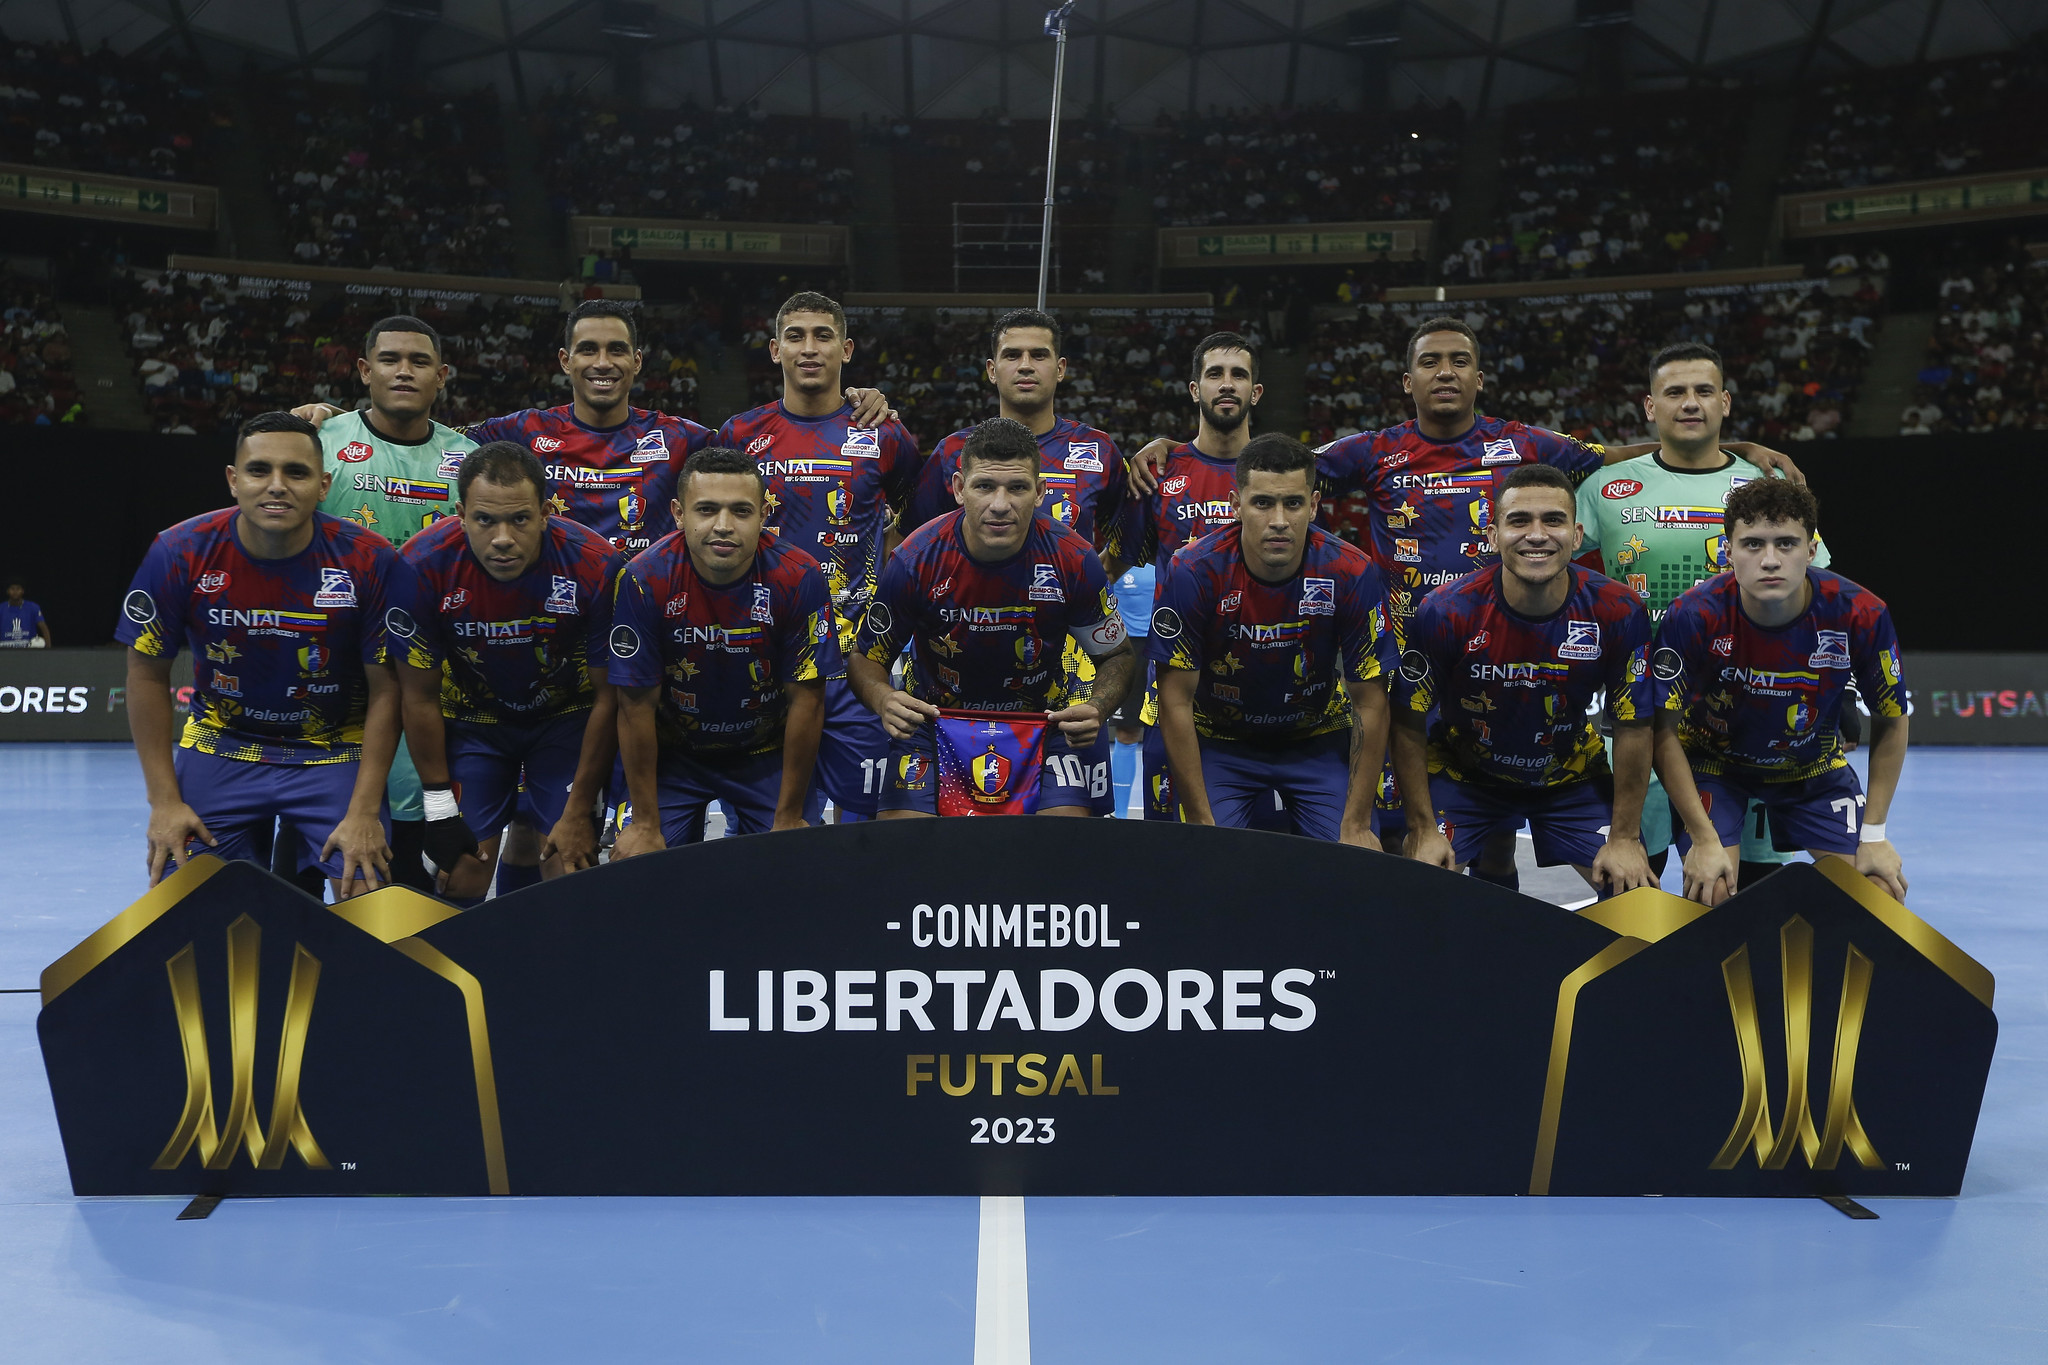 Centauros de Caracas listo para la CONMEBOL Libertadores Futsal